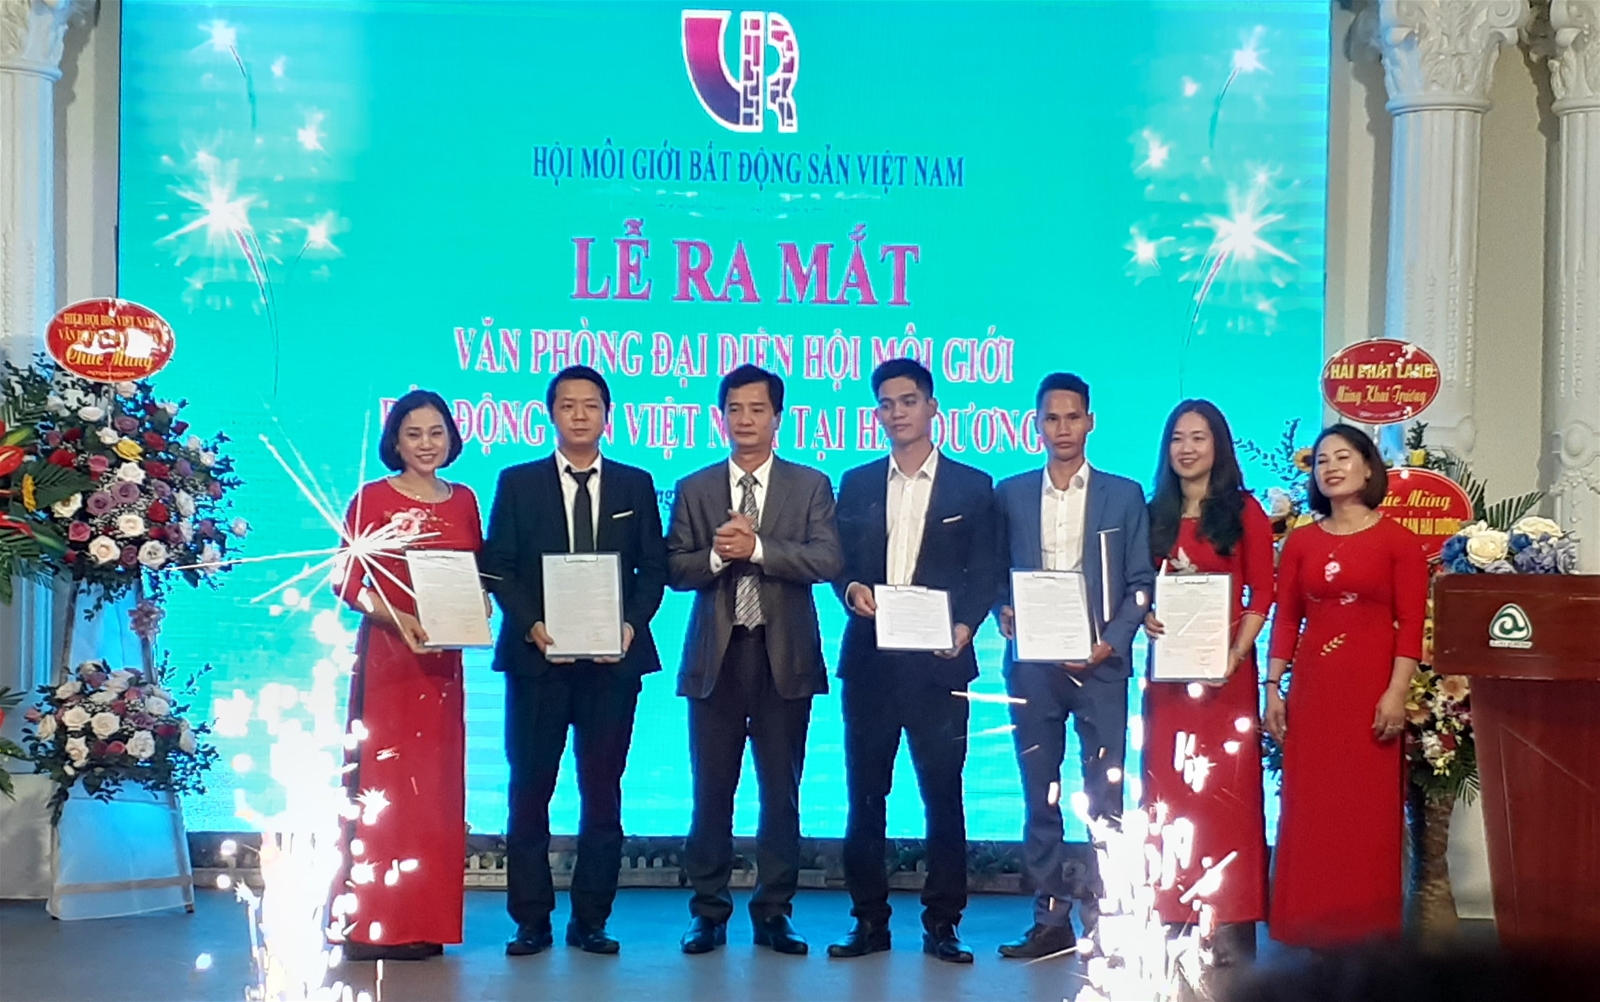 Ra mắt văn phòng đại diện Hội Môi giới bất động sản Việt Nam tại Hải Dương